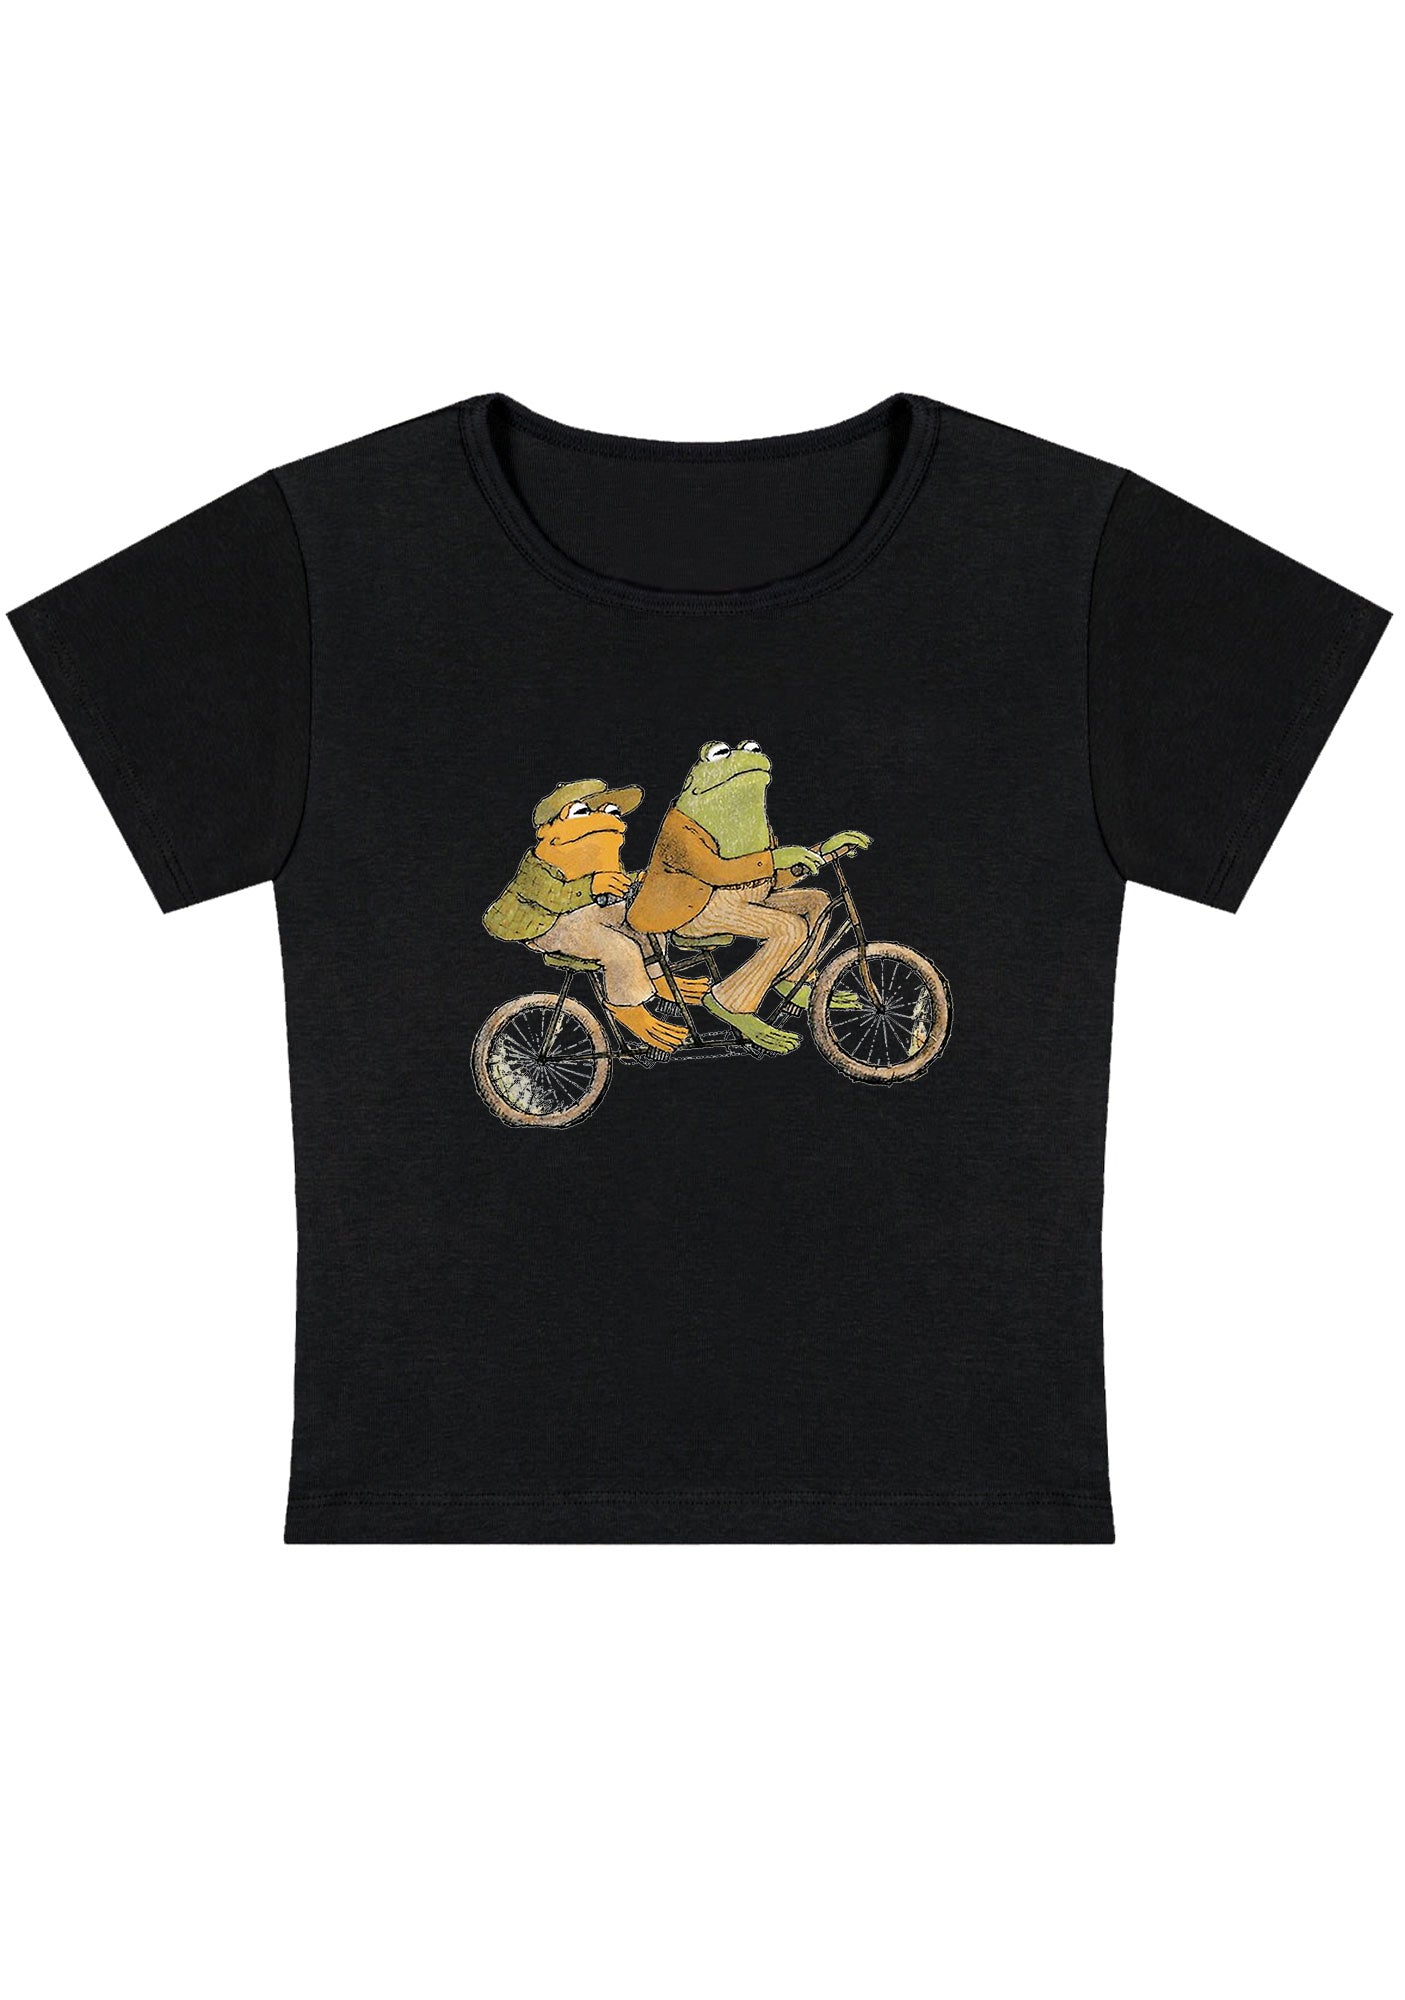 Frogs Ride Bike Y2K Baby Tee